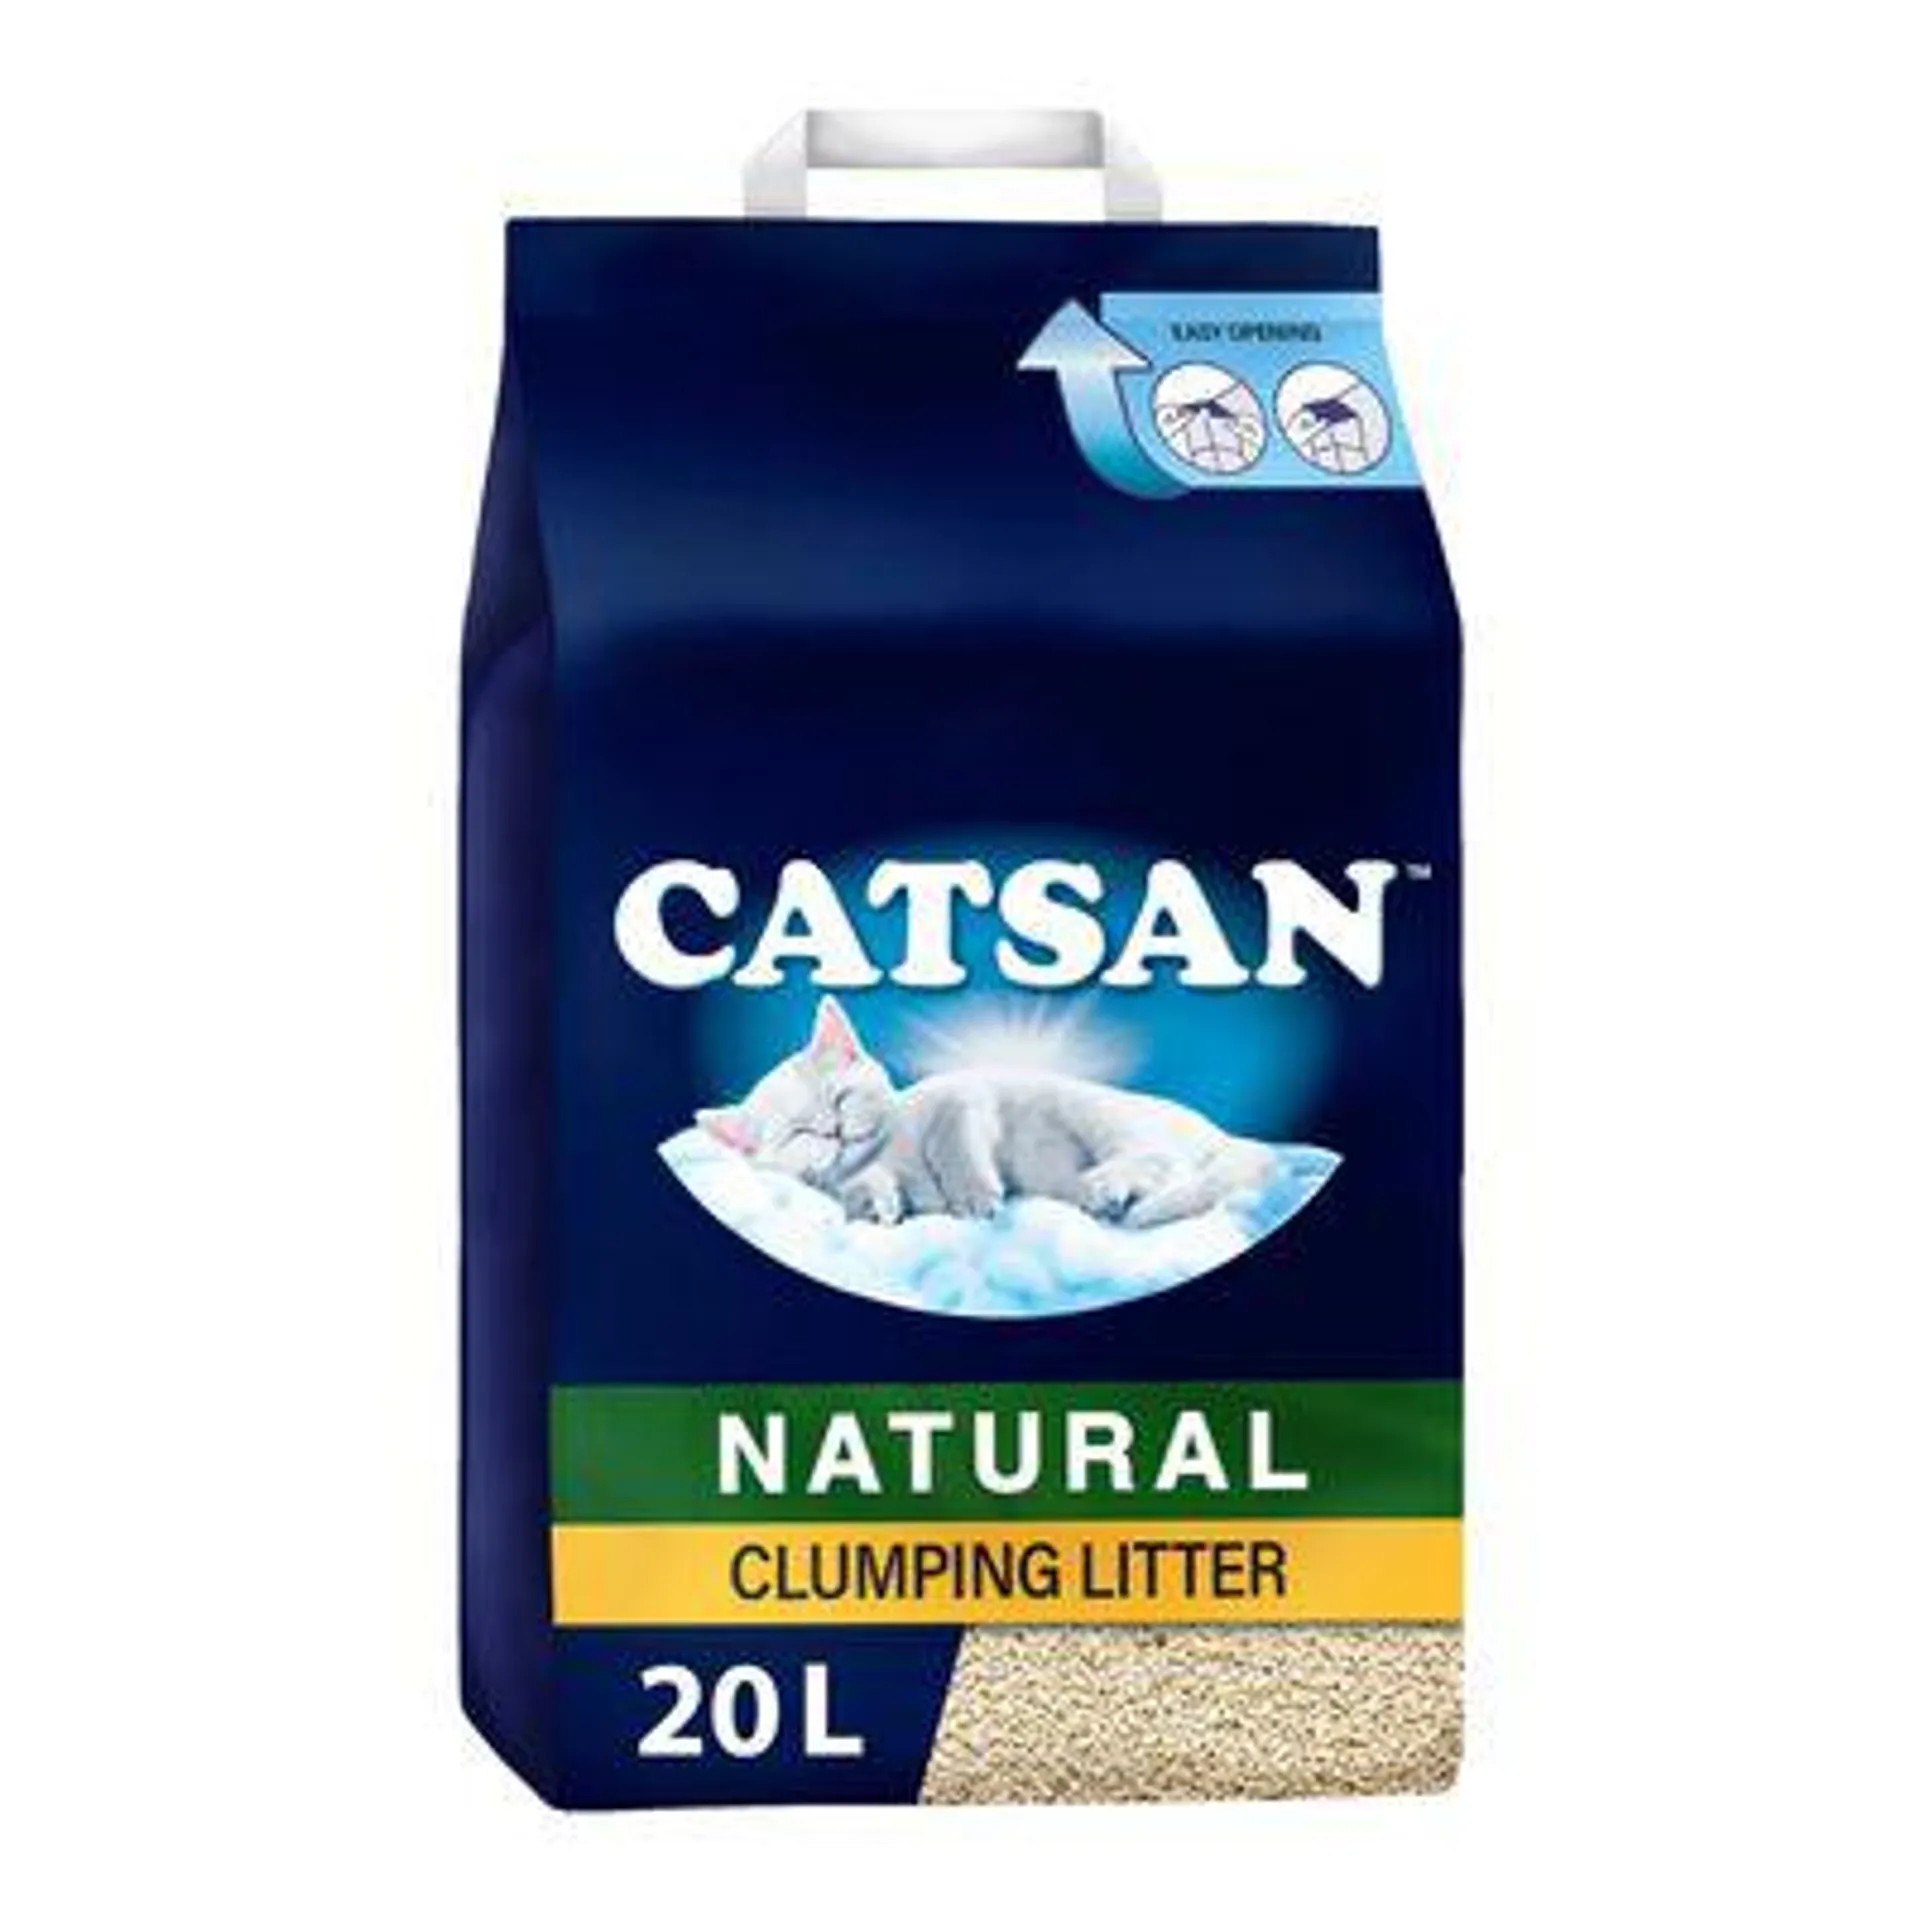 20l Catsan Natural Cat Litter - 15% Off! *